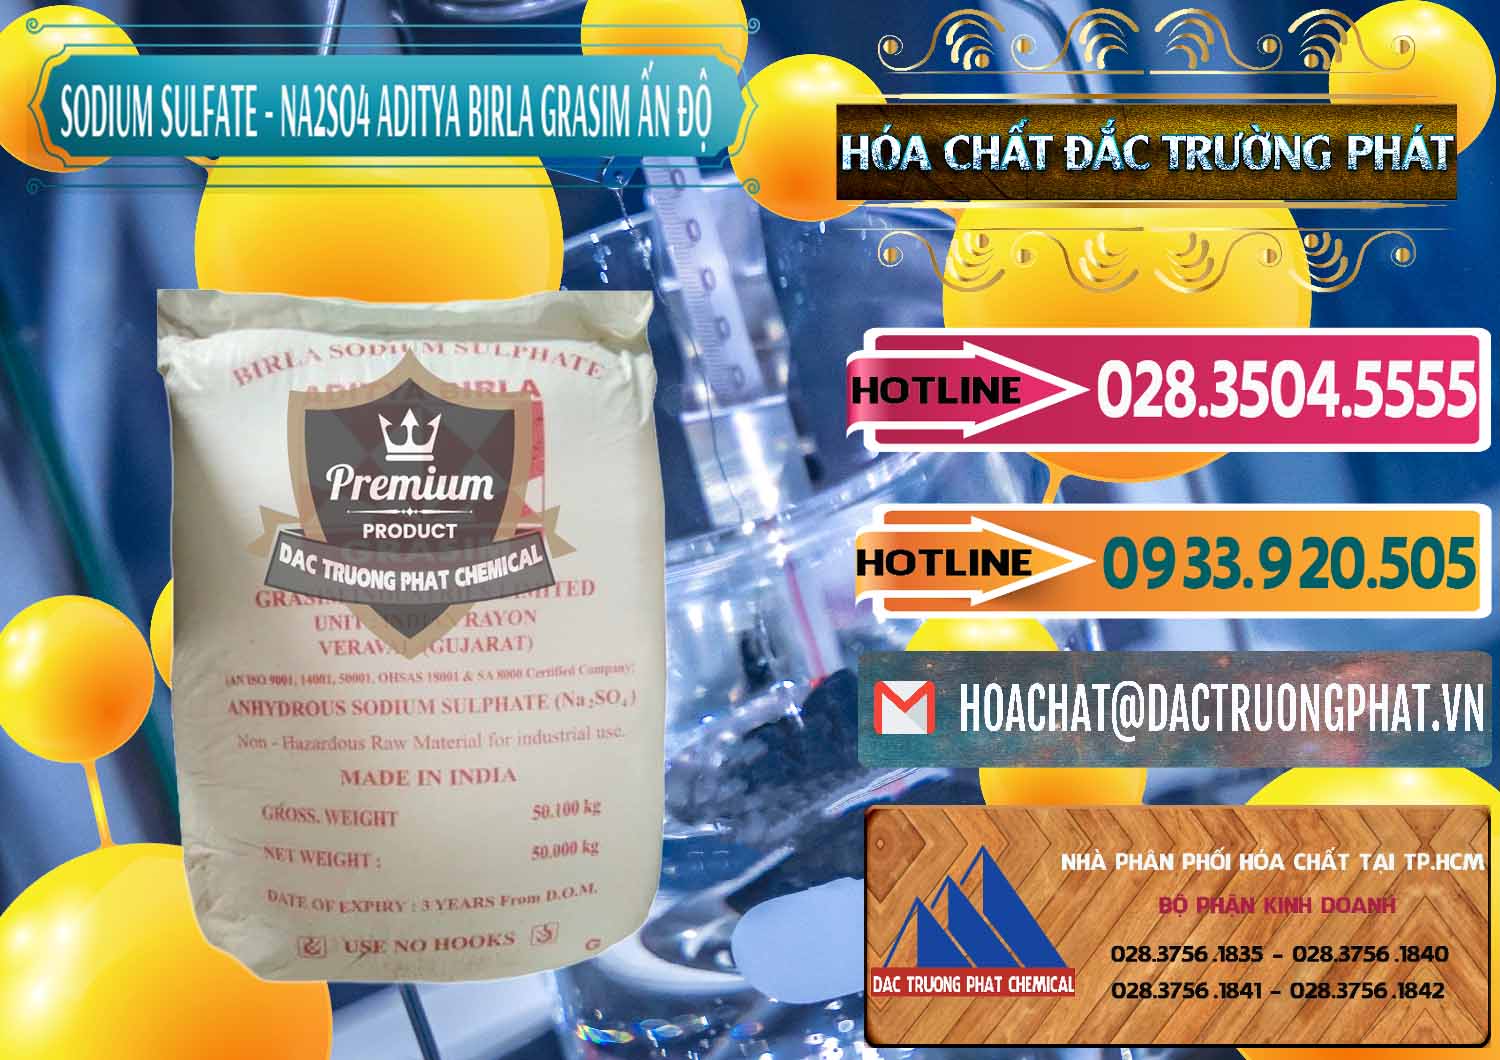 Đơn vị bán - phân phối Sodium Sulphate - Muối Sunfat Na2SO4 Grasim Ấn Độ India - 0356 - Đơn vị chuyên bán - phân phối hóa chất tại TP.HCM - dactruongphat.vn